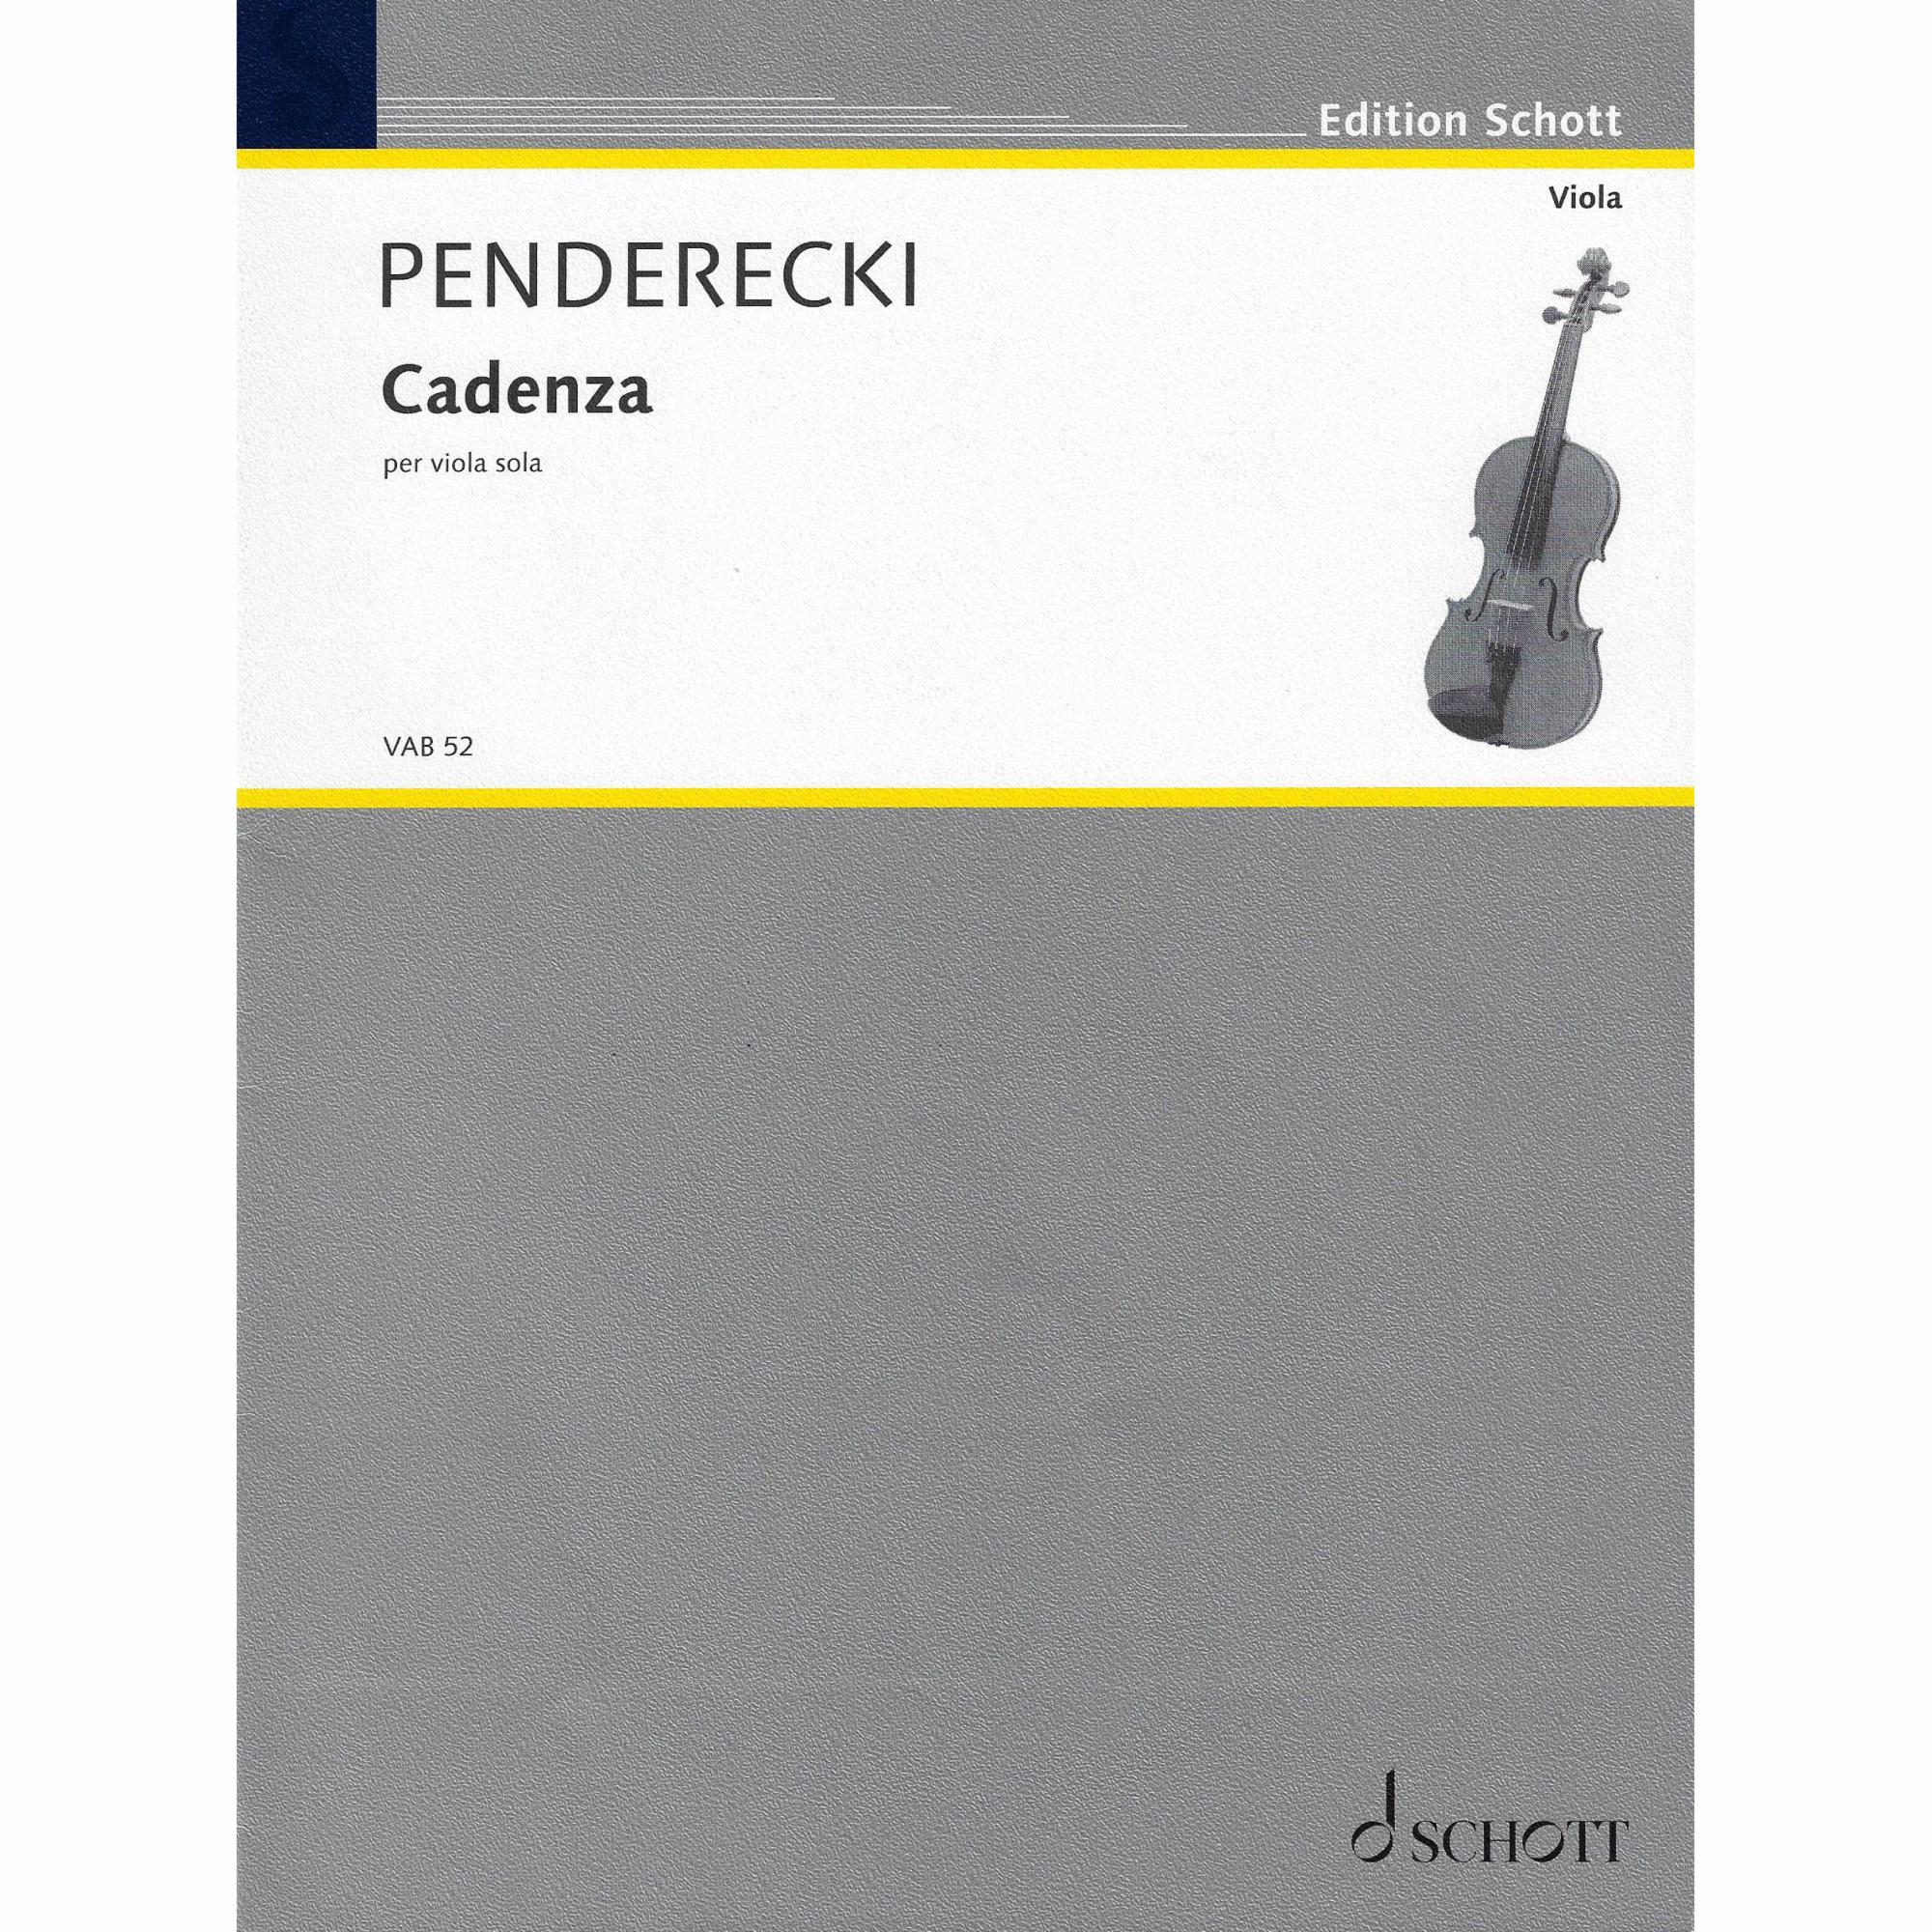 Penderecki -- Cadenza for Solo Viola